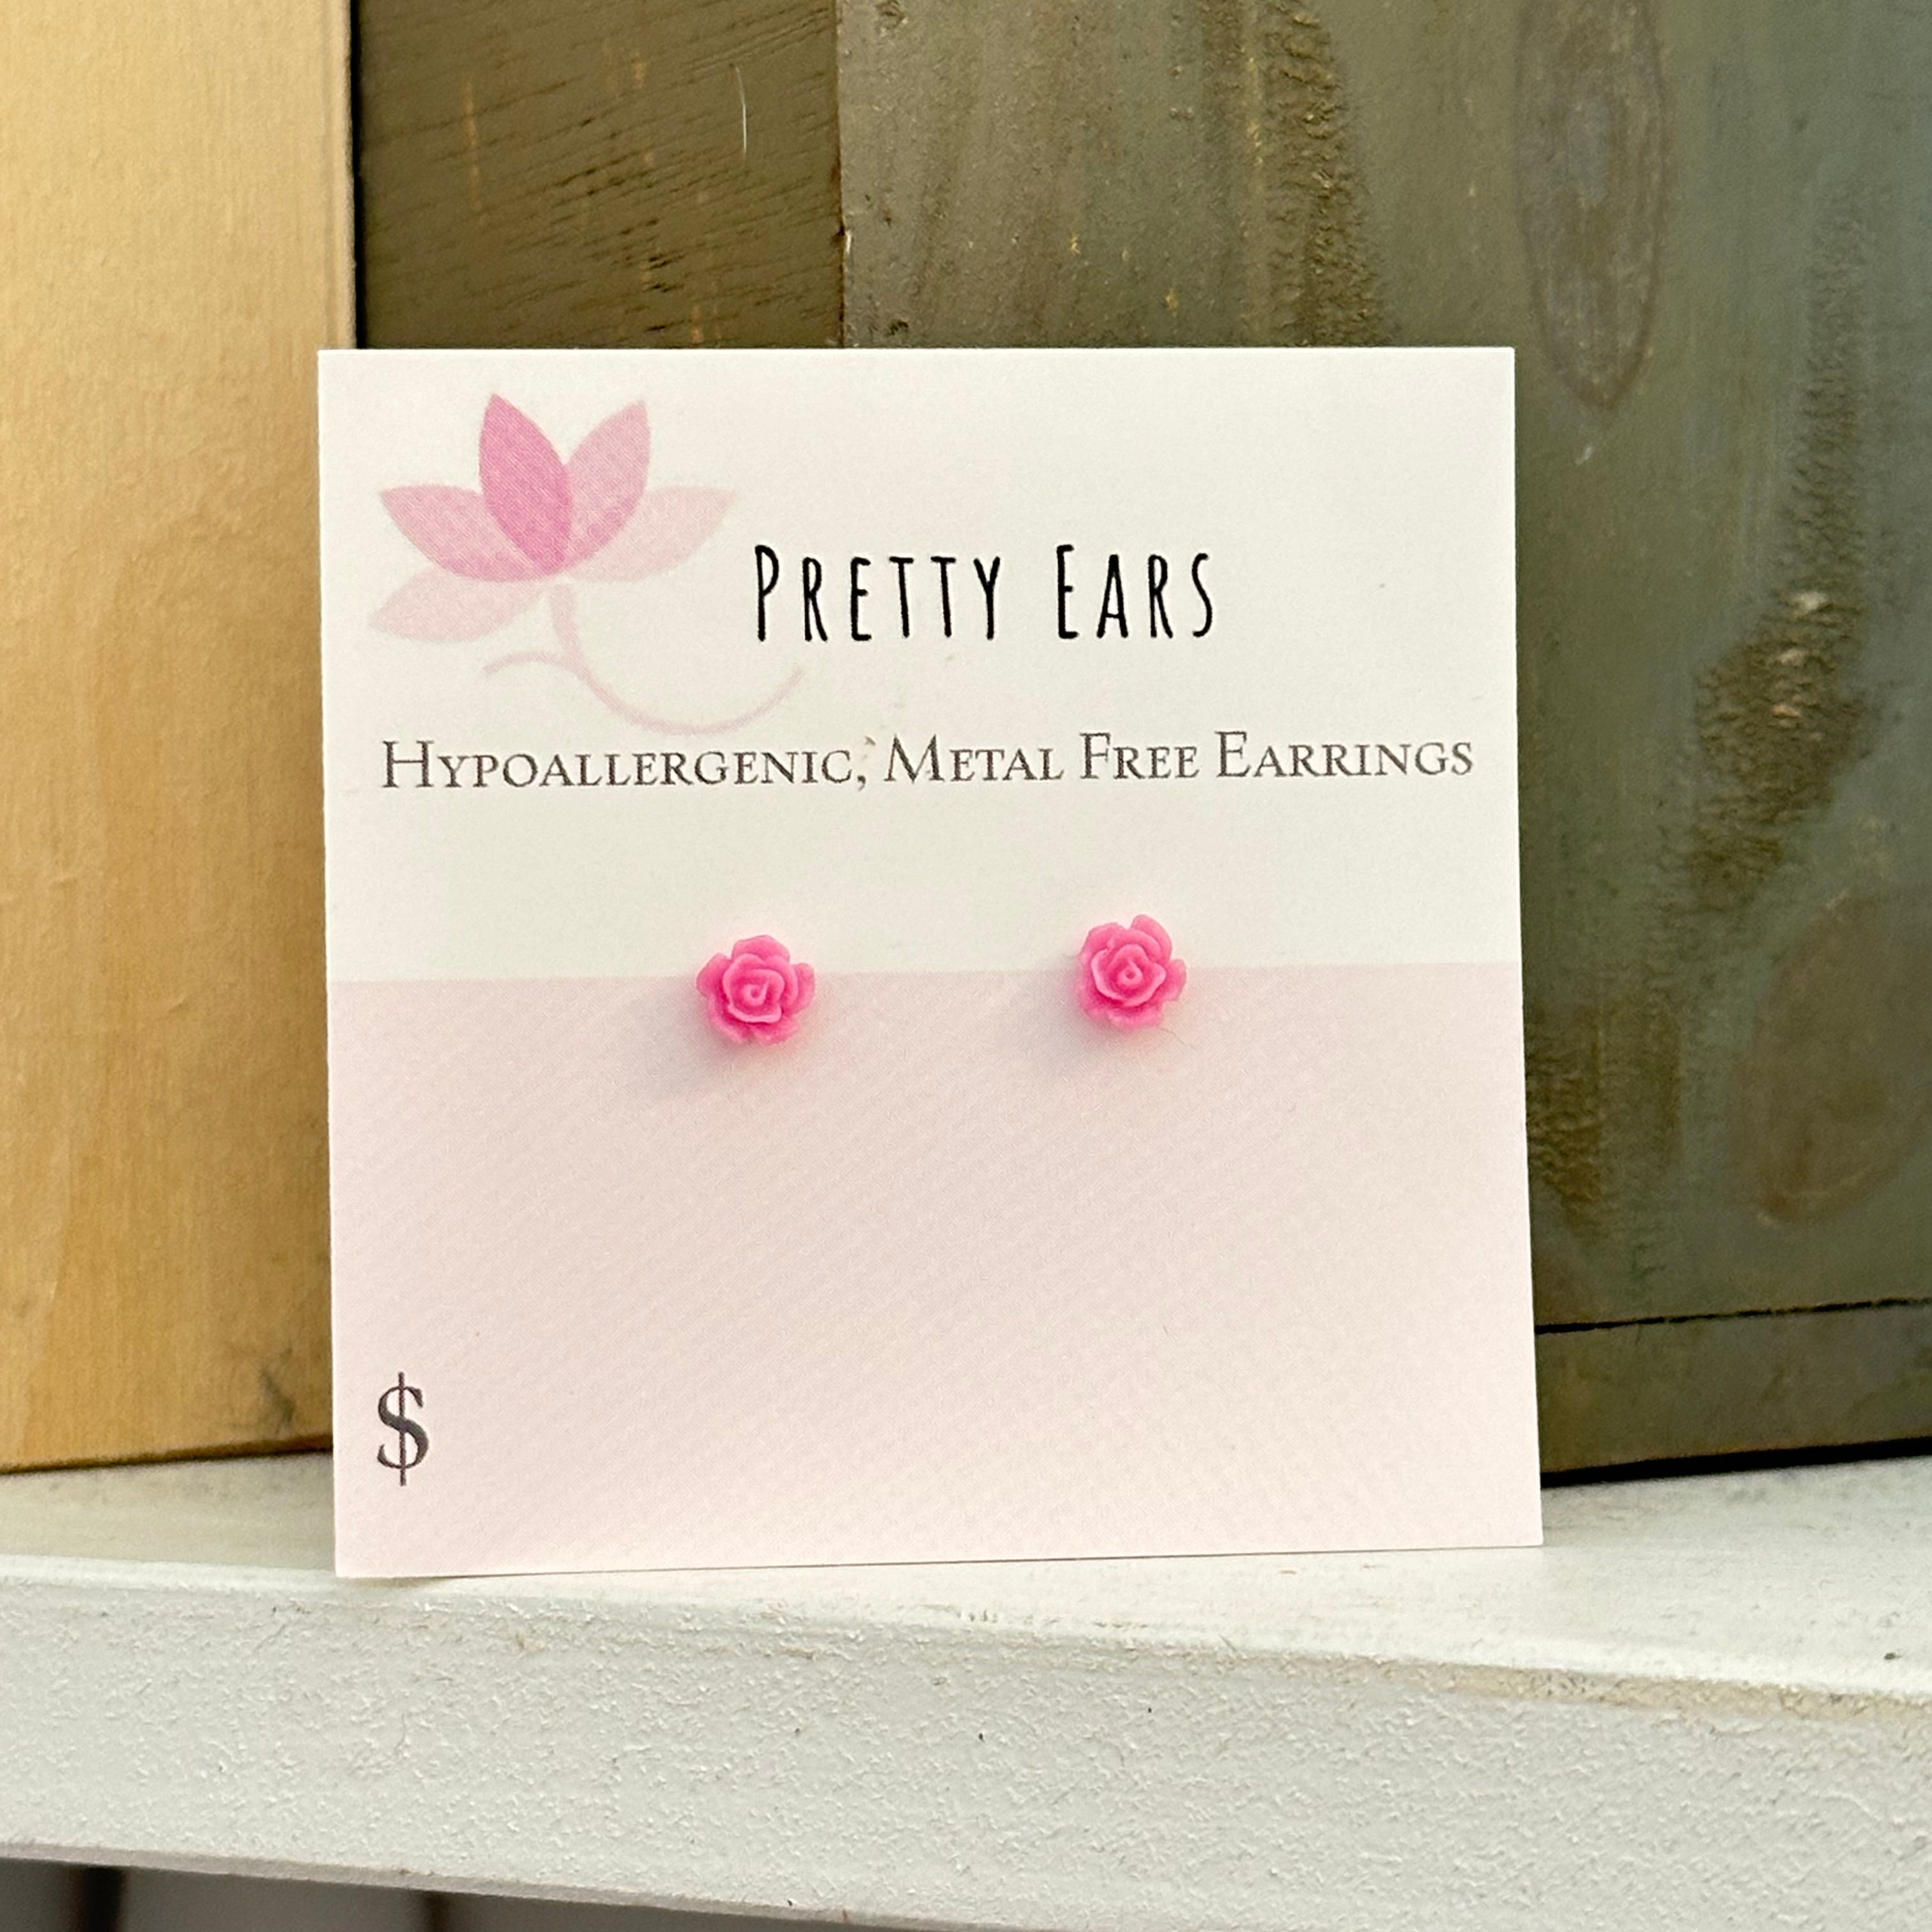 Mini Rose - Metal Free Hypoallergenic Earrings | Pretty Ears